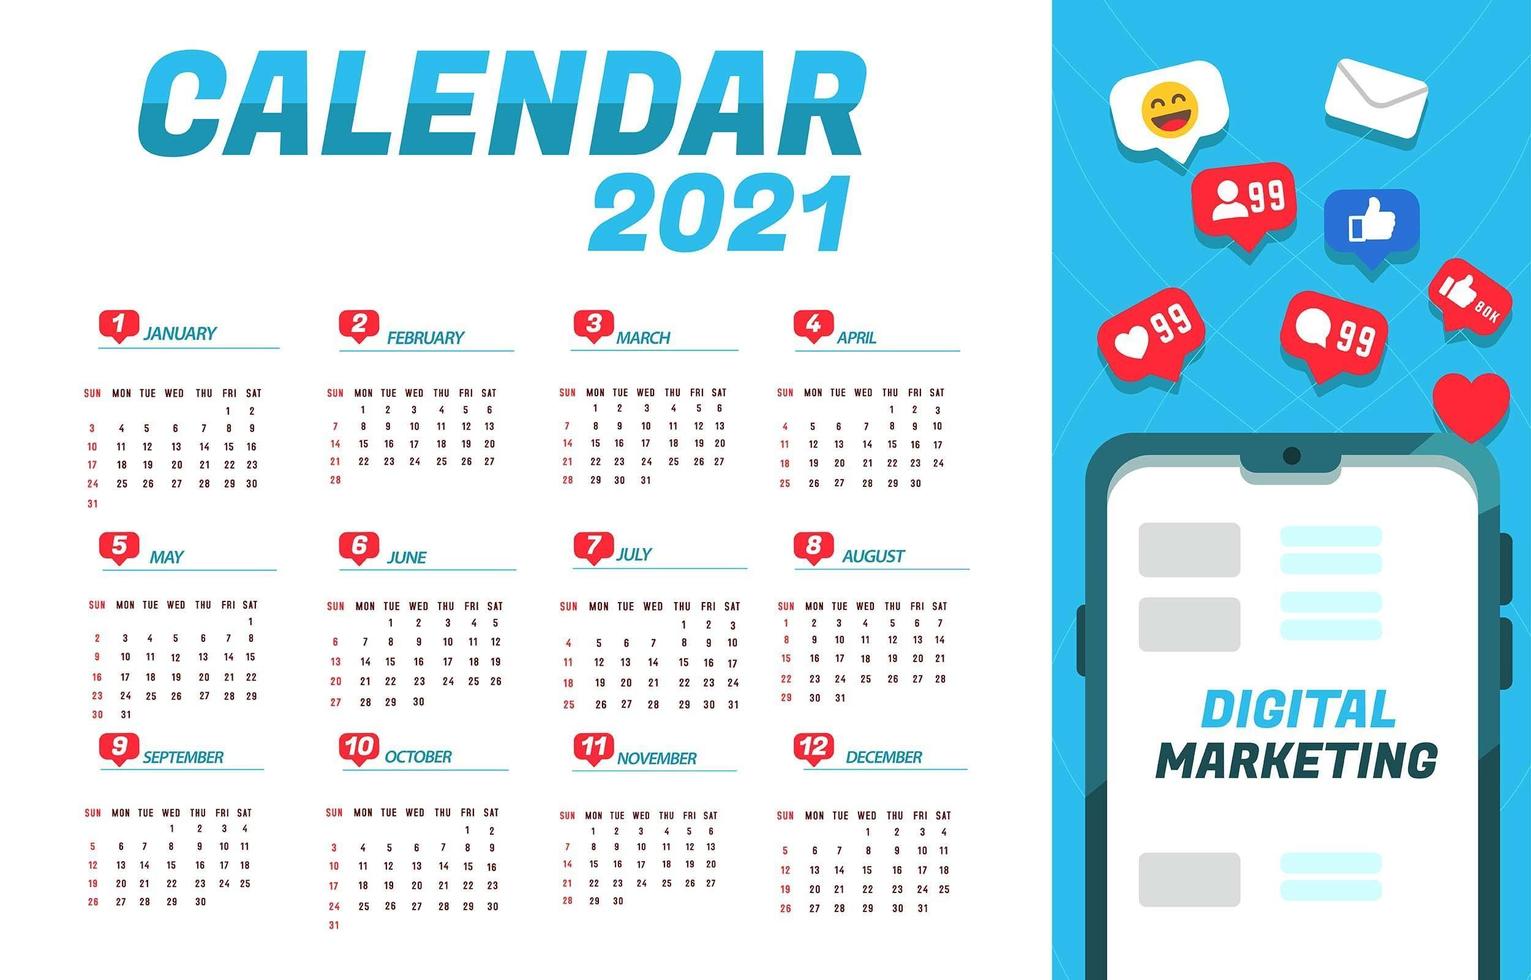 Notifications for 2021 Digital Marketing Calendar vector